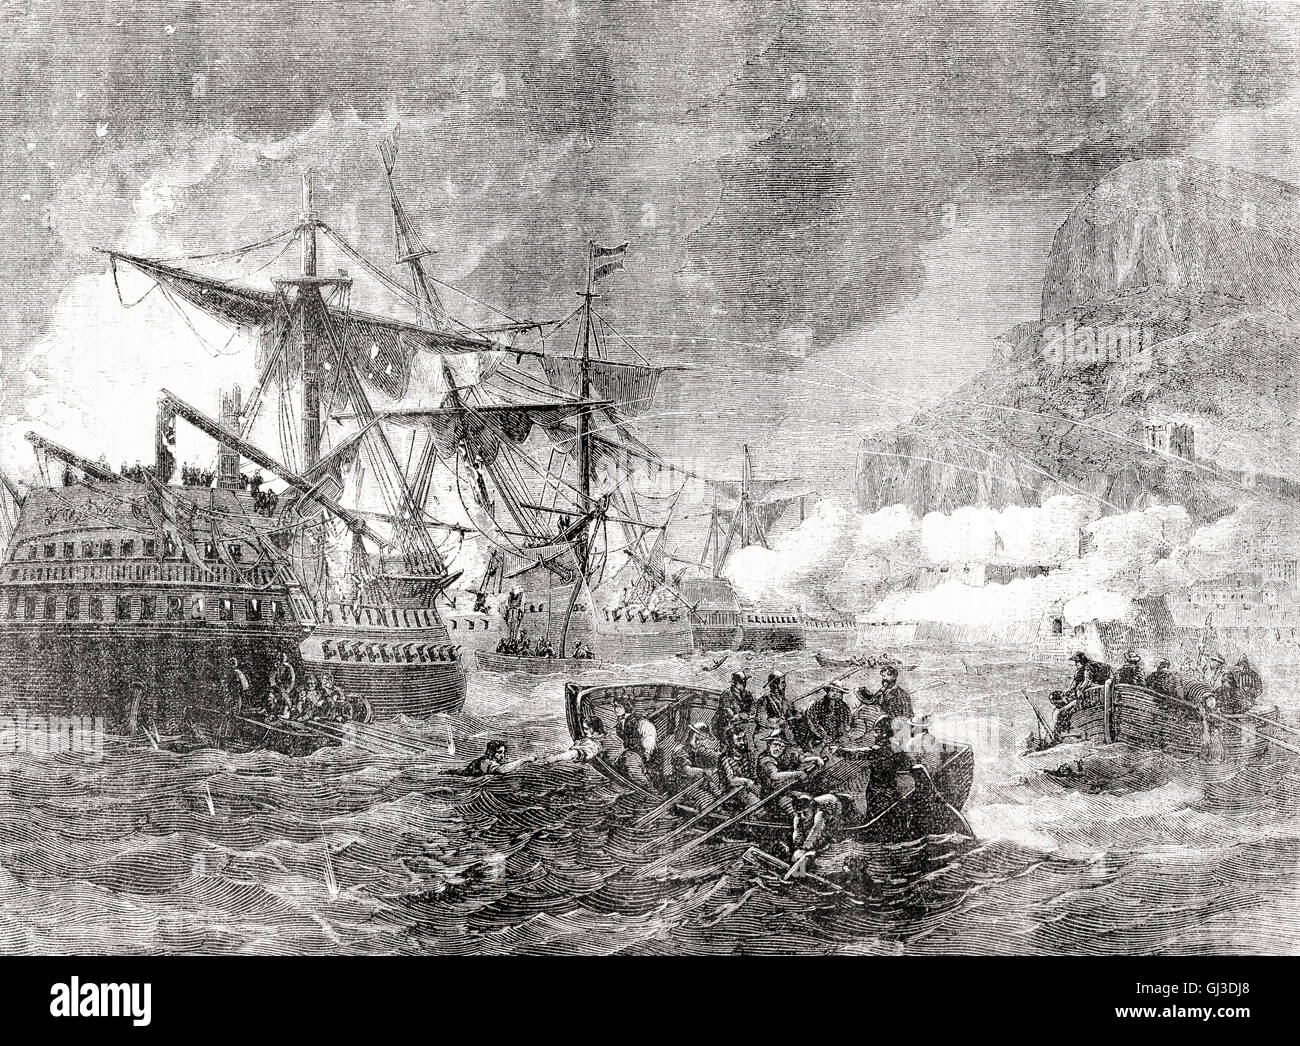 La cattura della nave spagnola della linea San Miguel dagli inglesi durante il Grande Assedio di Gibilterra, 1779 - 1783, un fallito tentativo da parte della Spagna e della Francia per catturare Gibilterra dagli inglesi durante la Guerra di Indipendenza Americana. Foto Stock